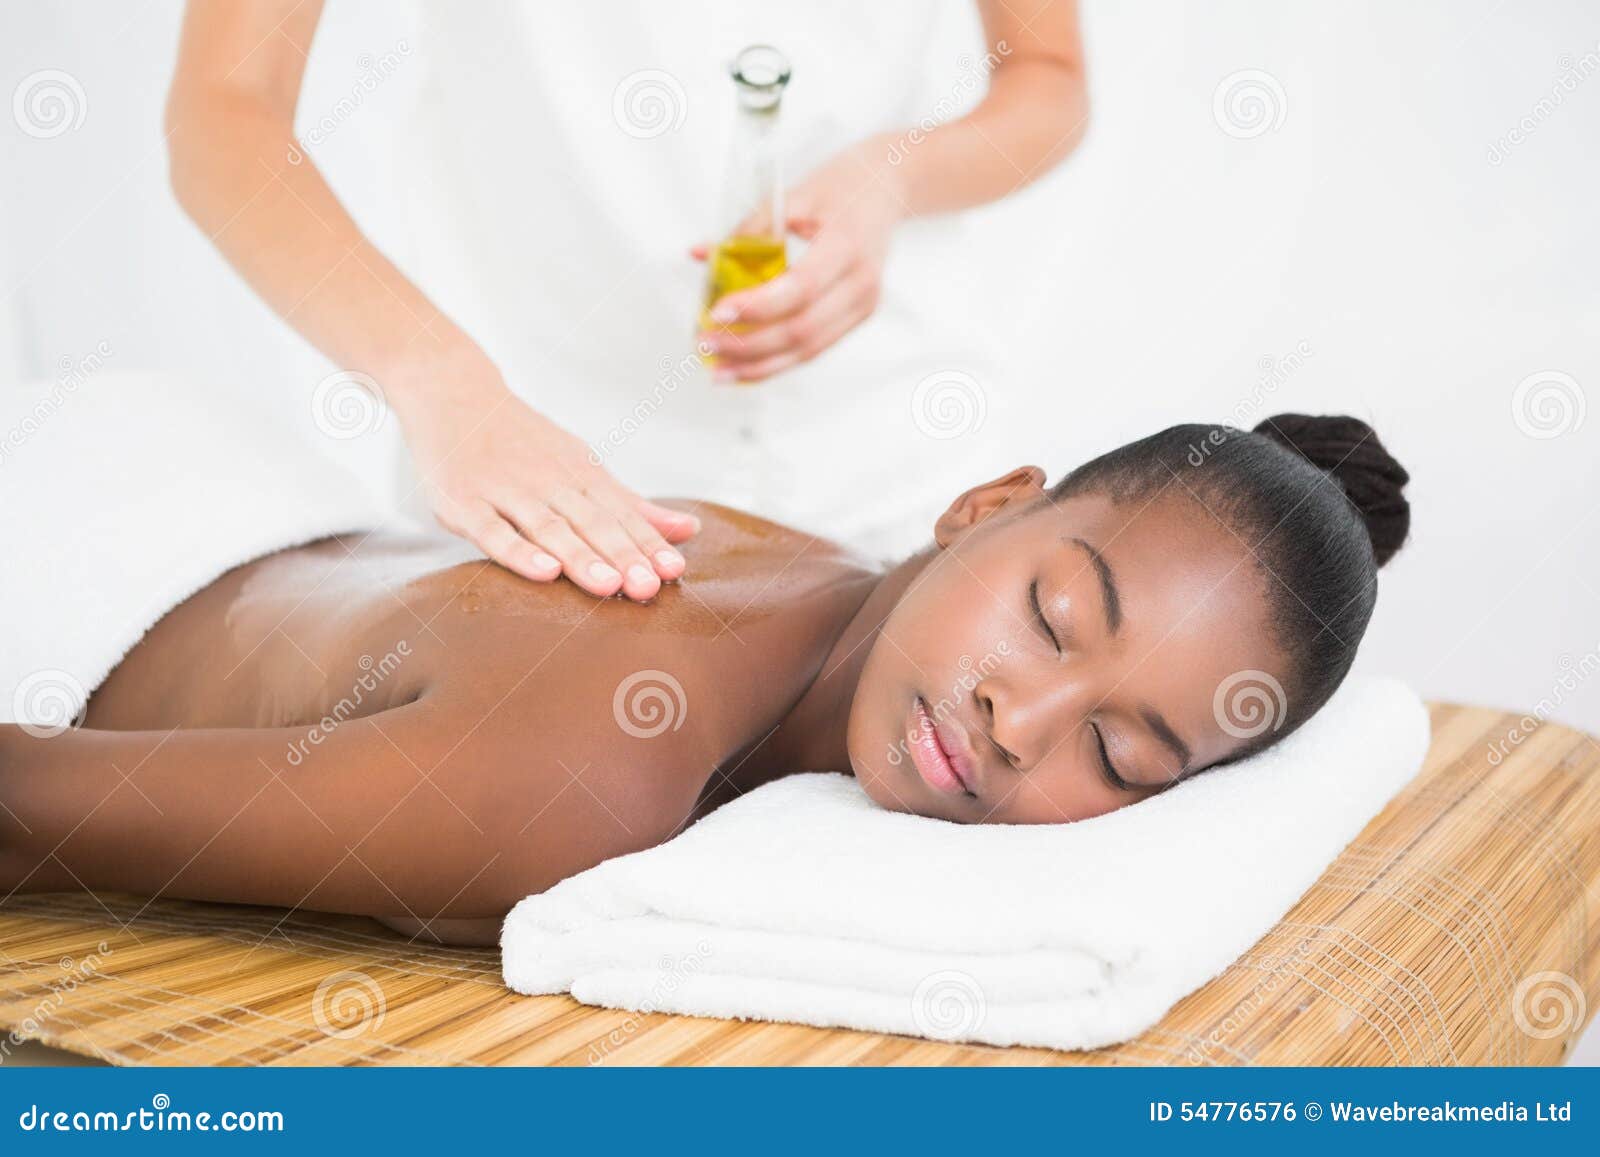 Негритянка делает массаж. Женщина на массажном столе. Массаж с маслицем милые. Женщины в массажном масле. Массаж с маслом каритэ.